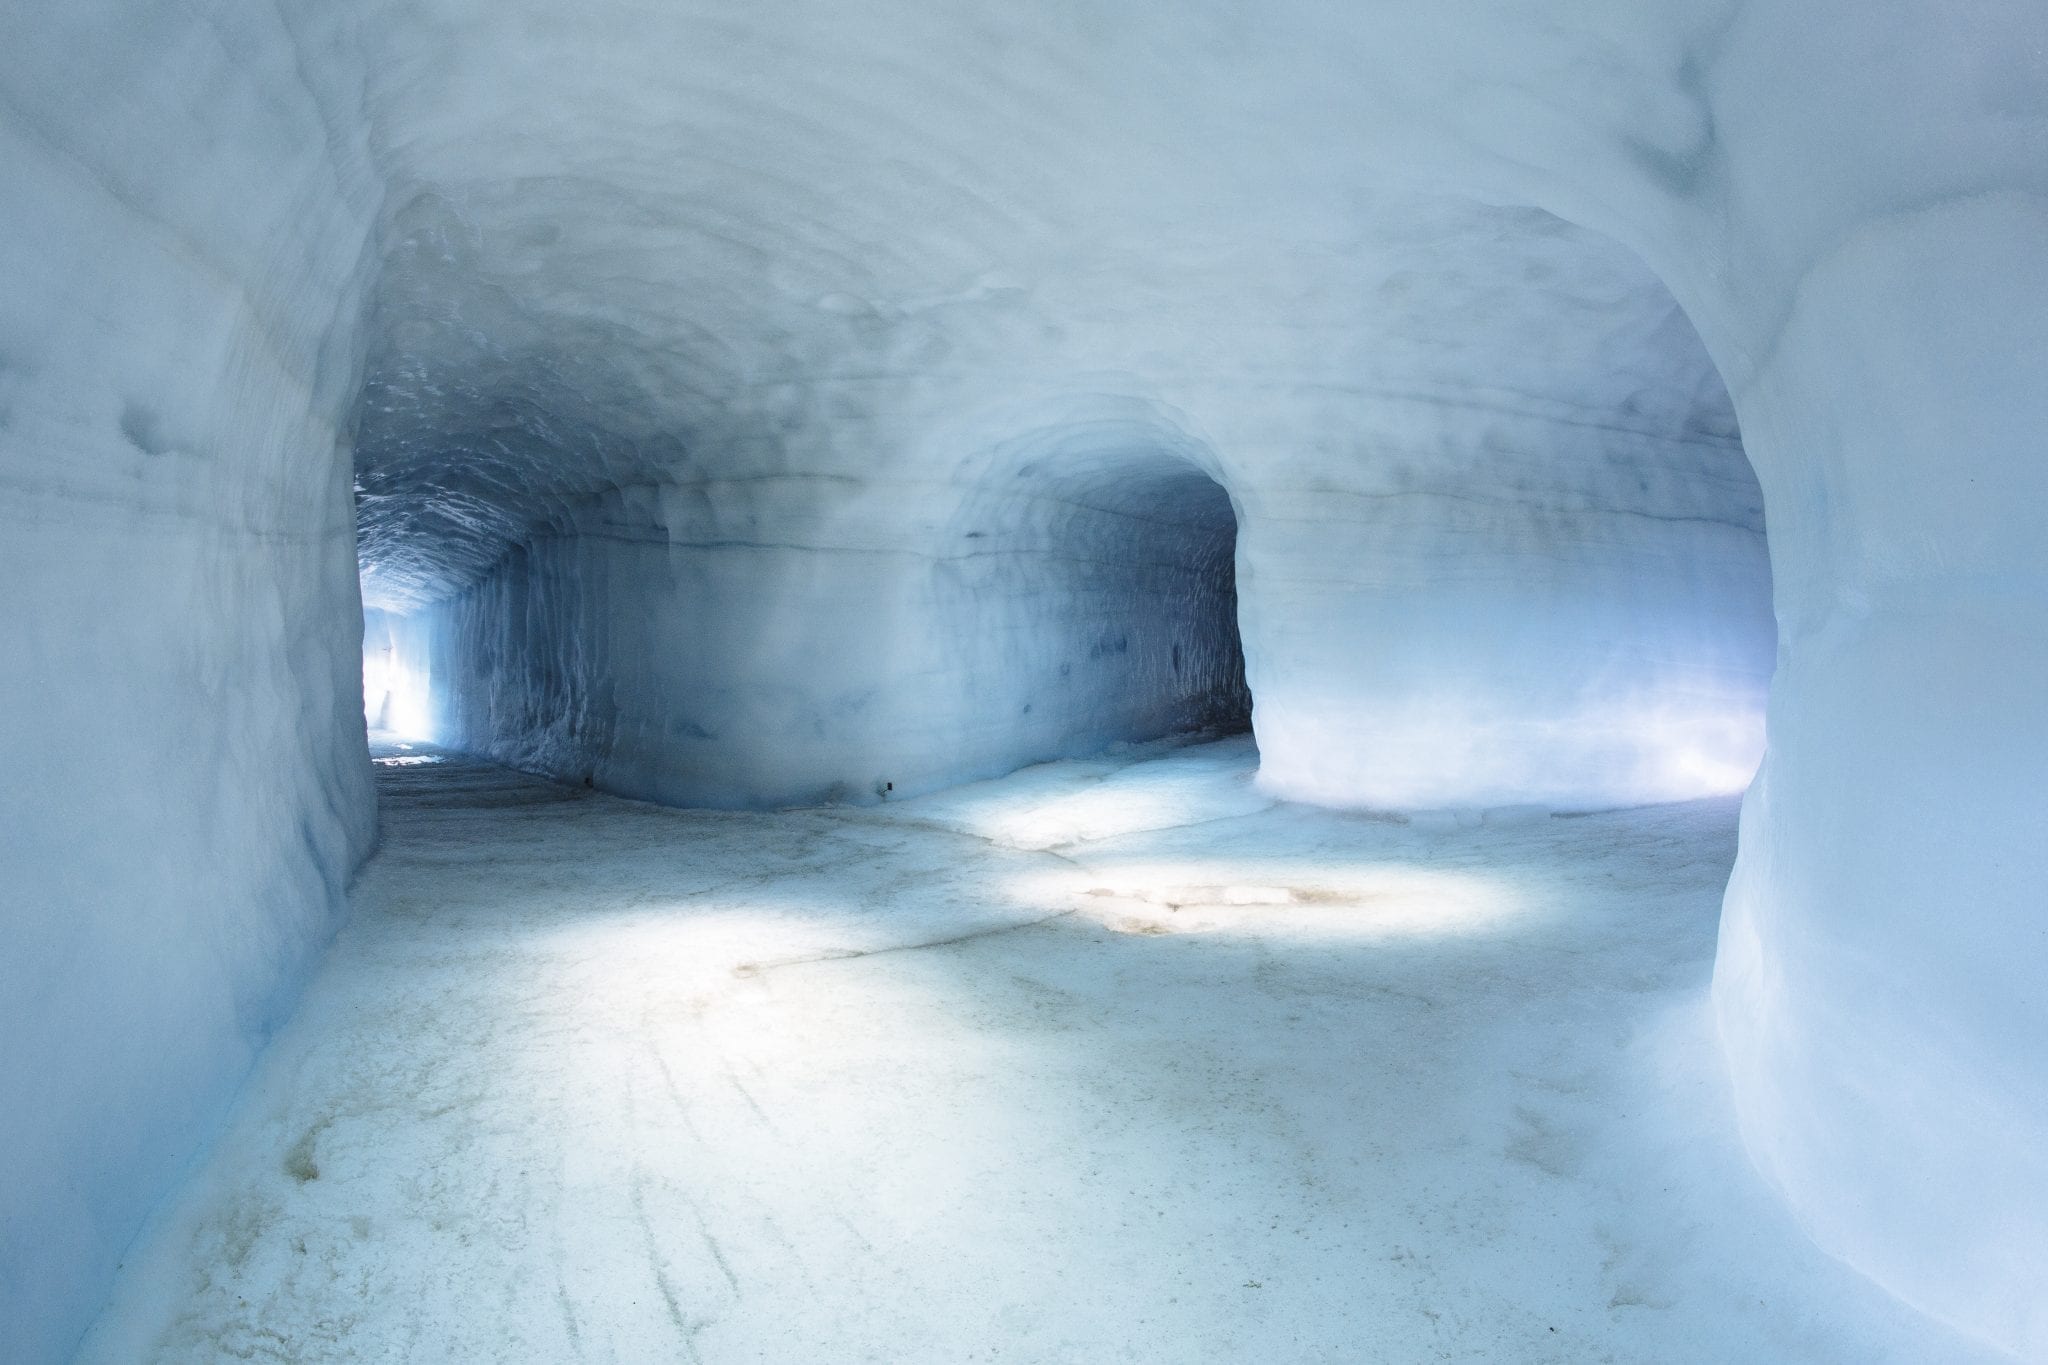 Into the glacier ice cave tunnel